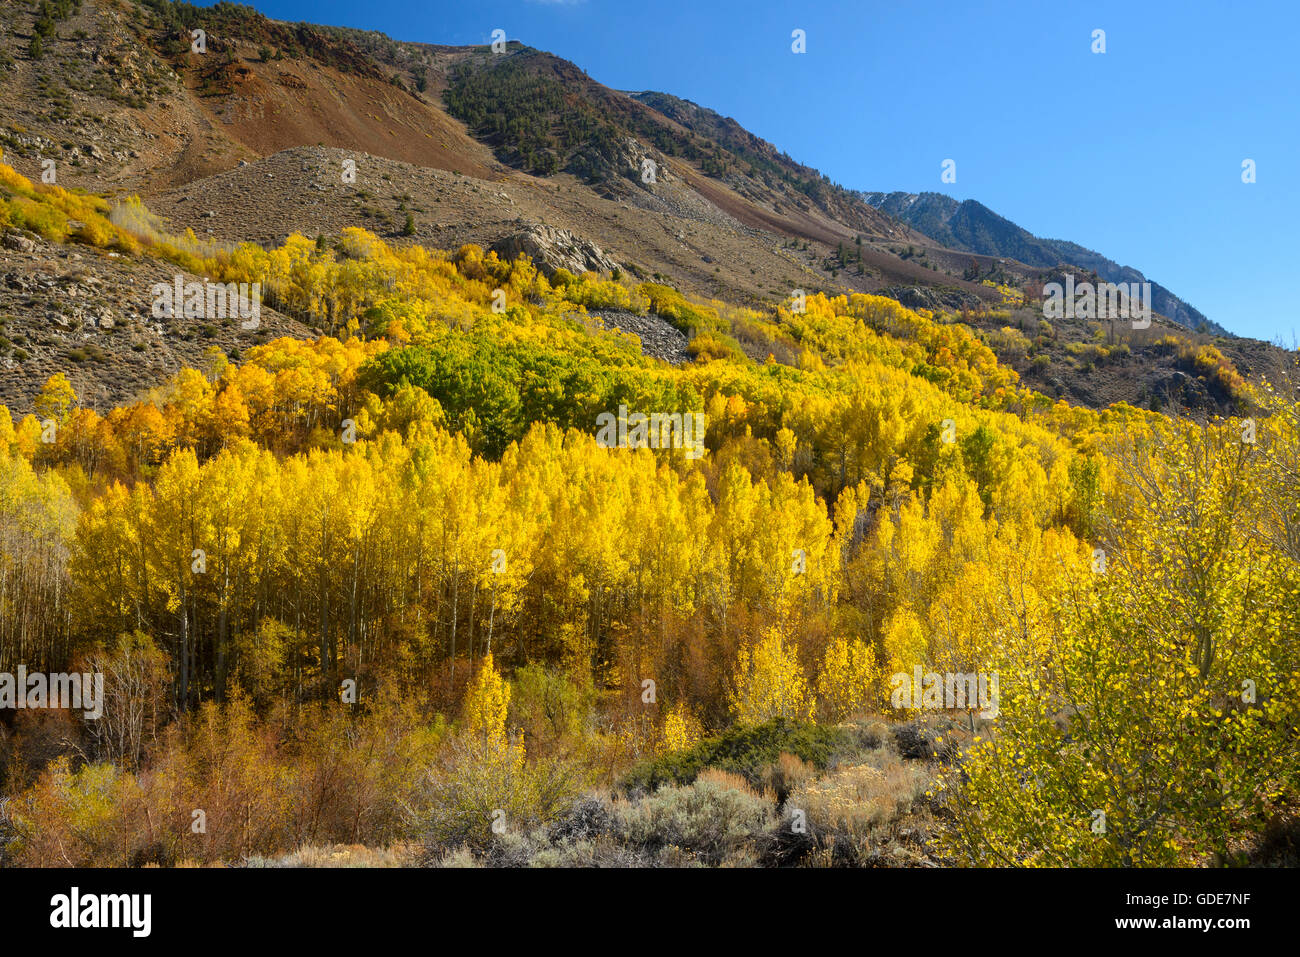 USA,California,Eastern Sierra,évêque,évêque creek feuillage,automne,automne,montagne, Banque D'Images